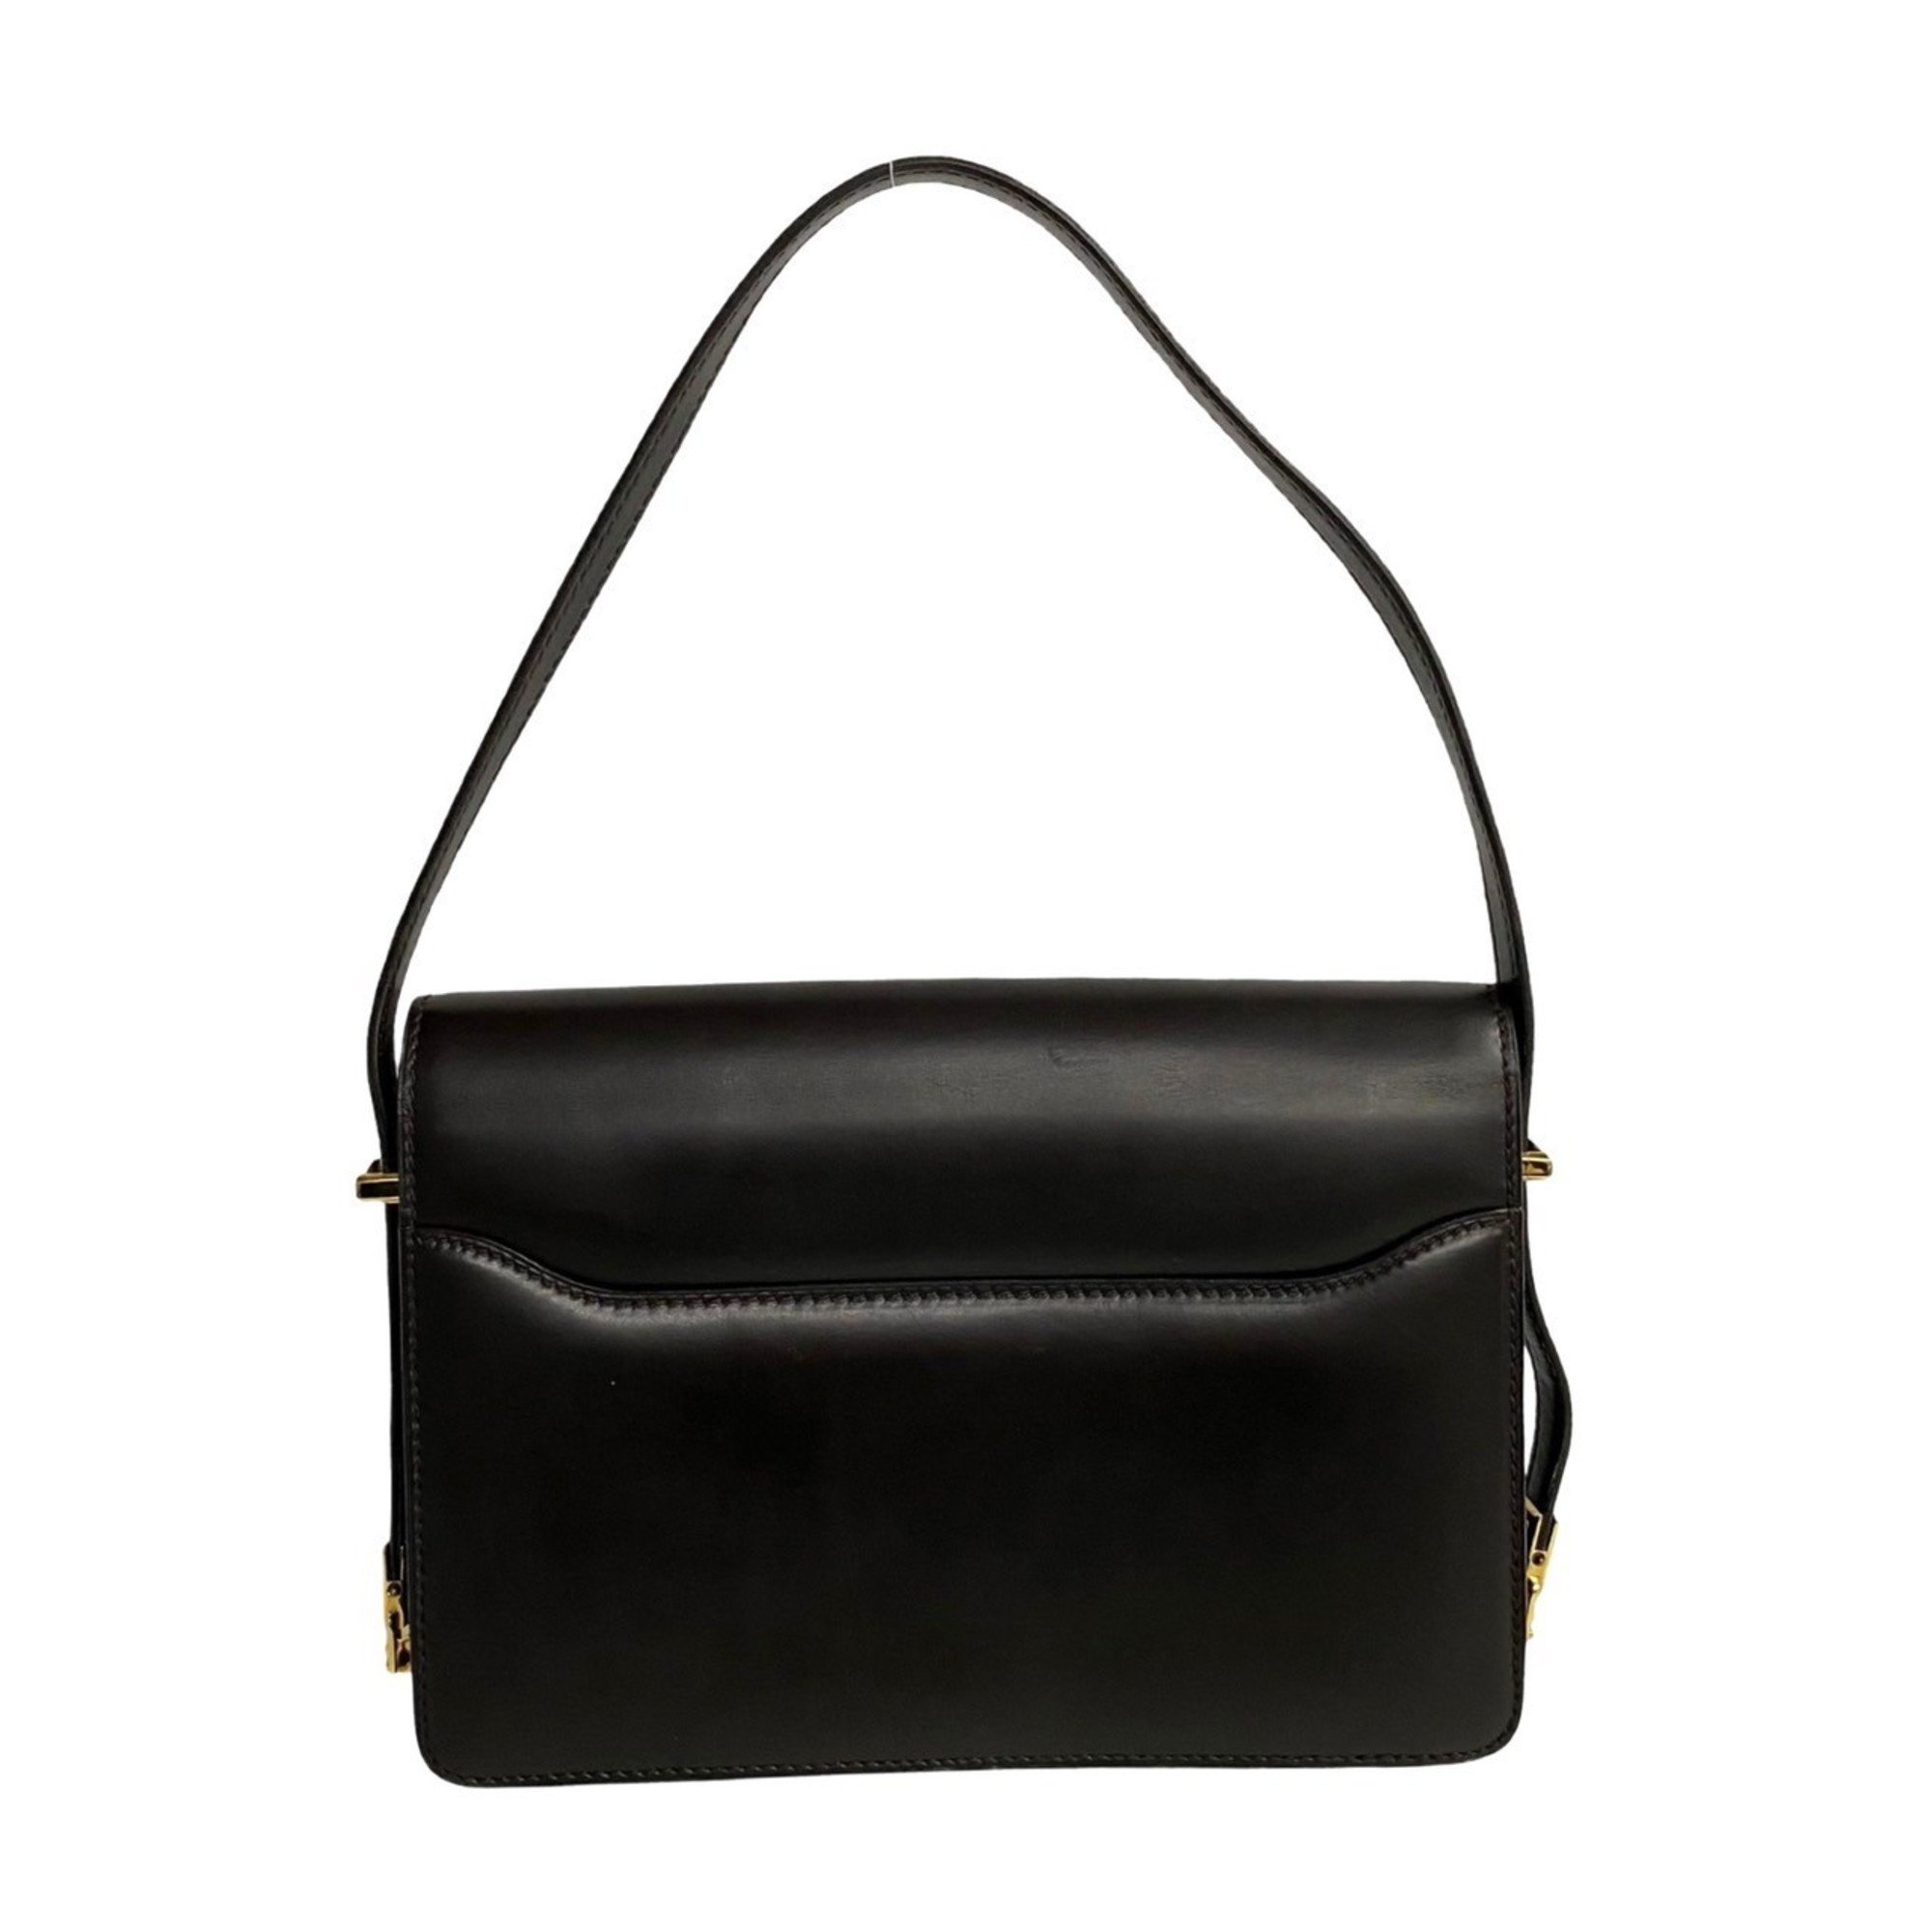 CELINE Triomphe hardware leather 2way handbag shoulder bag brown 18855